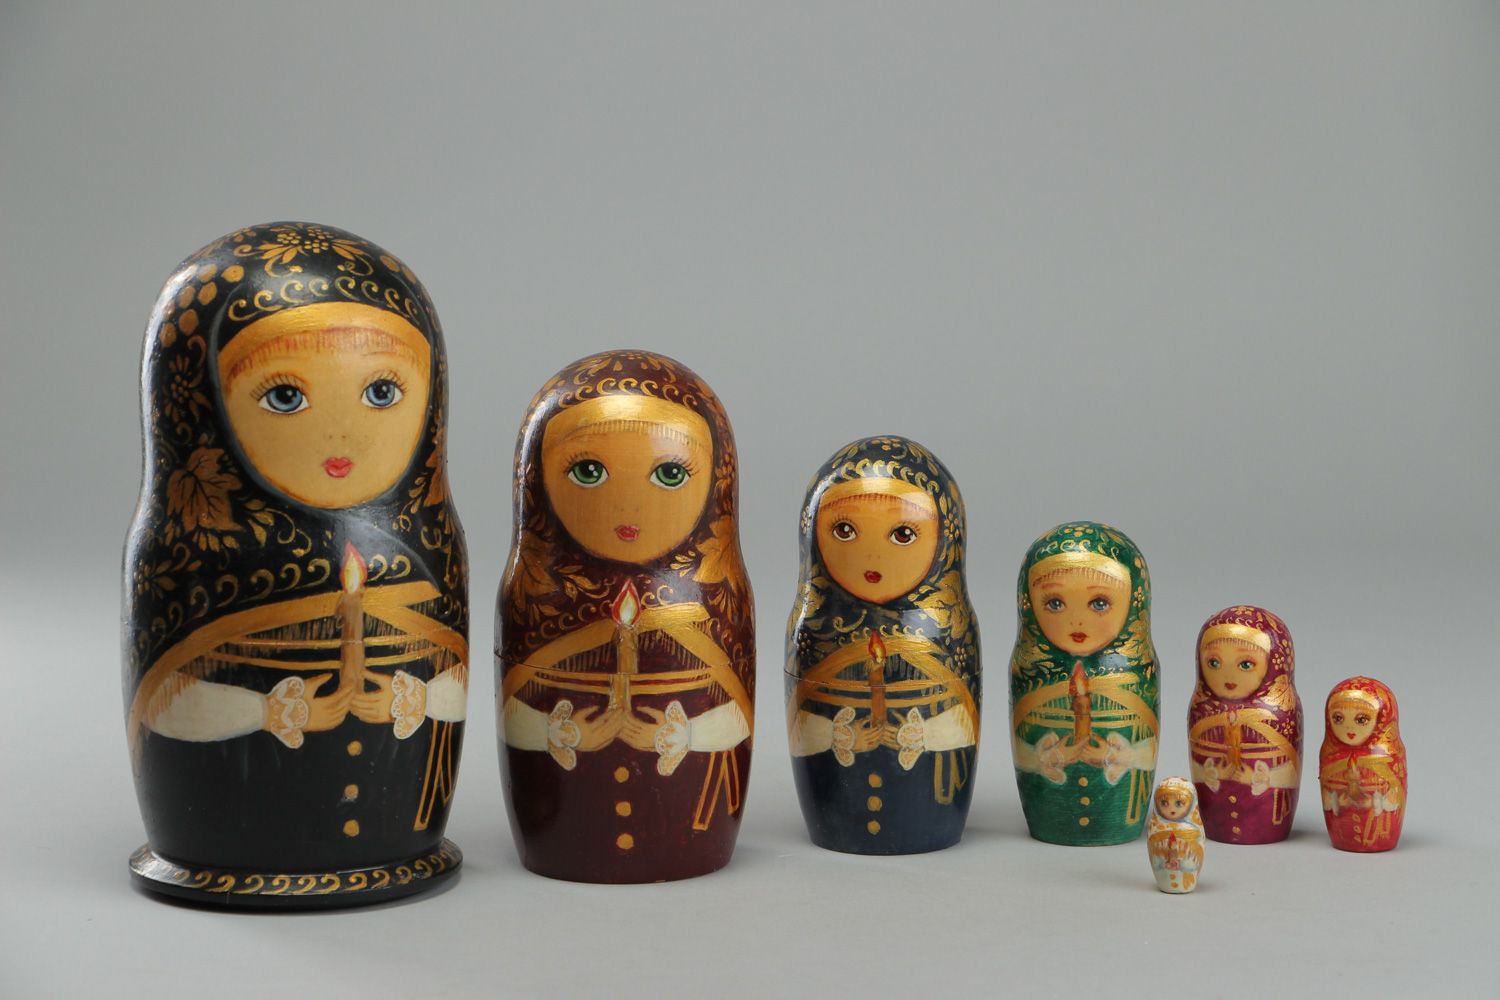 Belle poupée russe de bois naturel avec peinture faite main 7 poupées originales photo 2